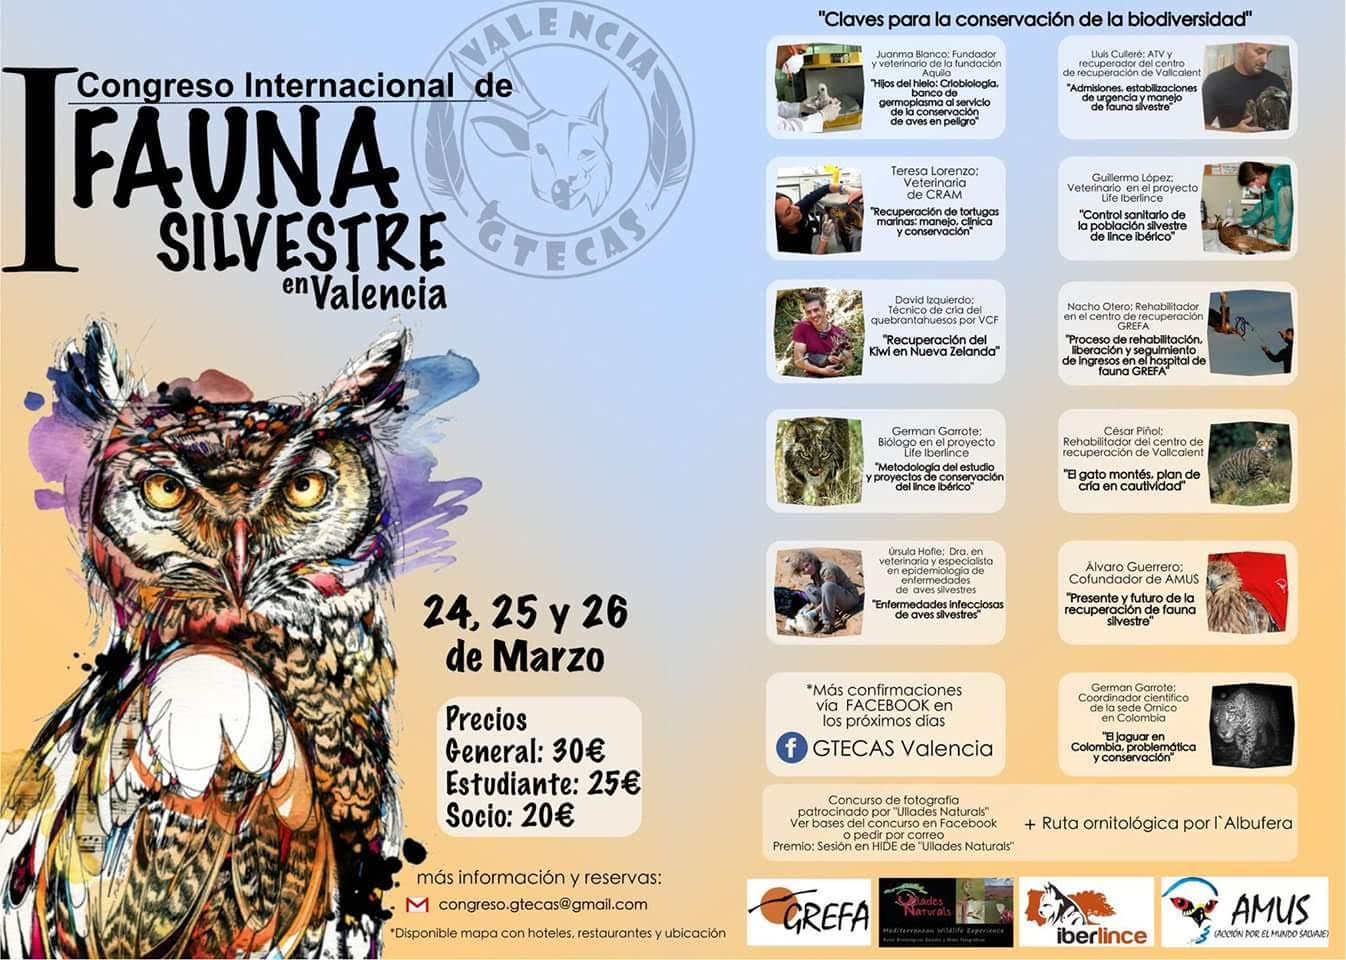 Congreso Internacional de Fauna Silvestre, con GTECAS Valencia